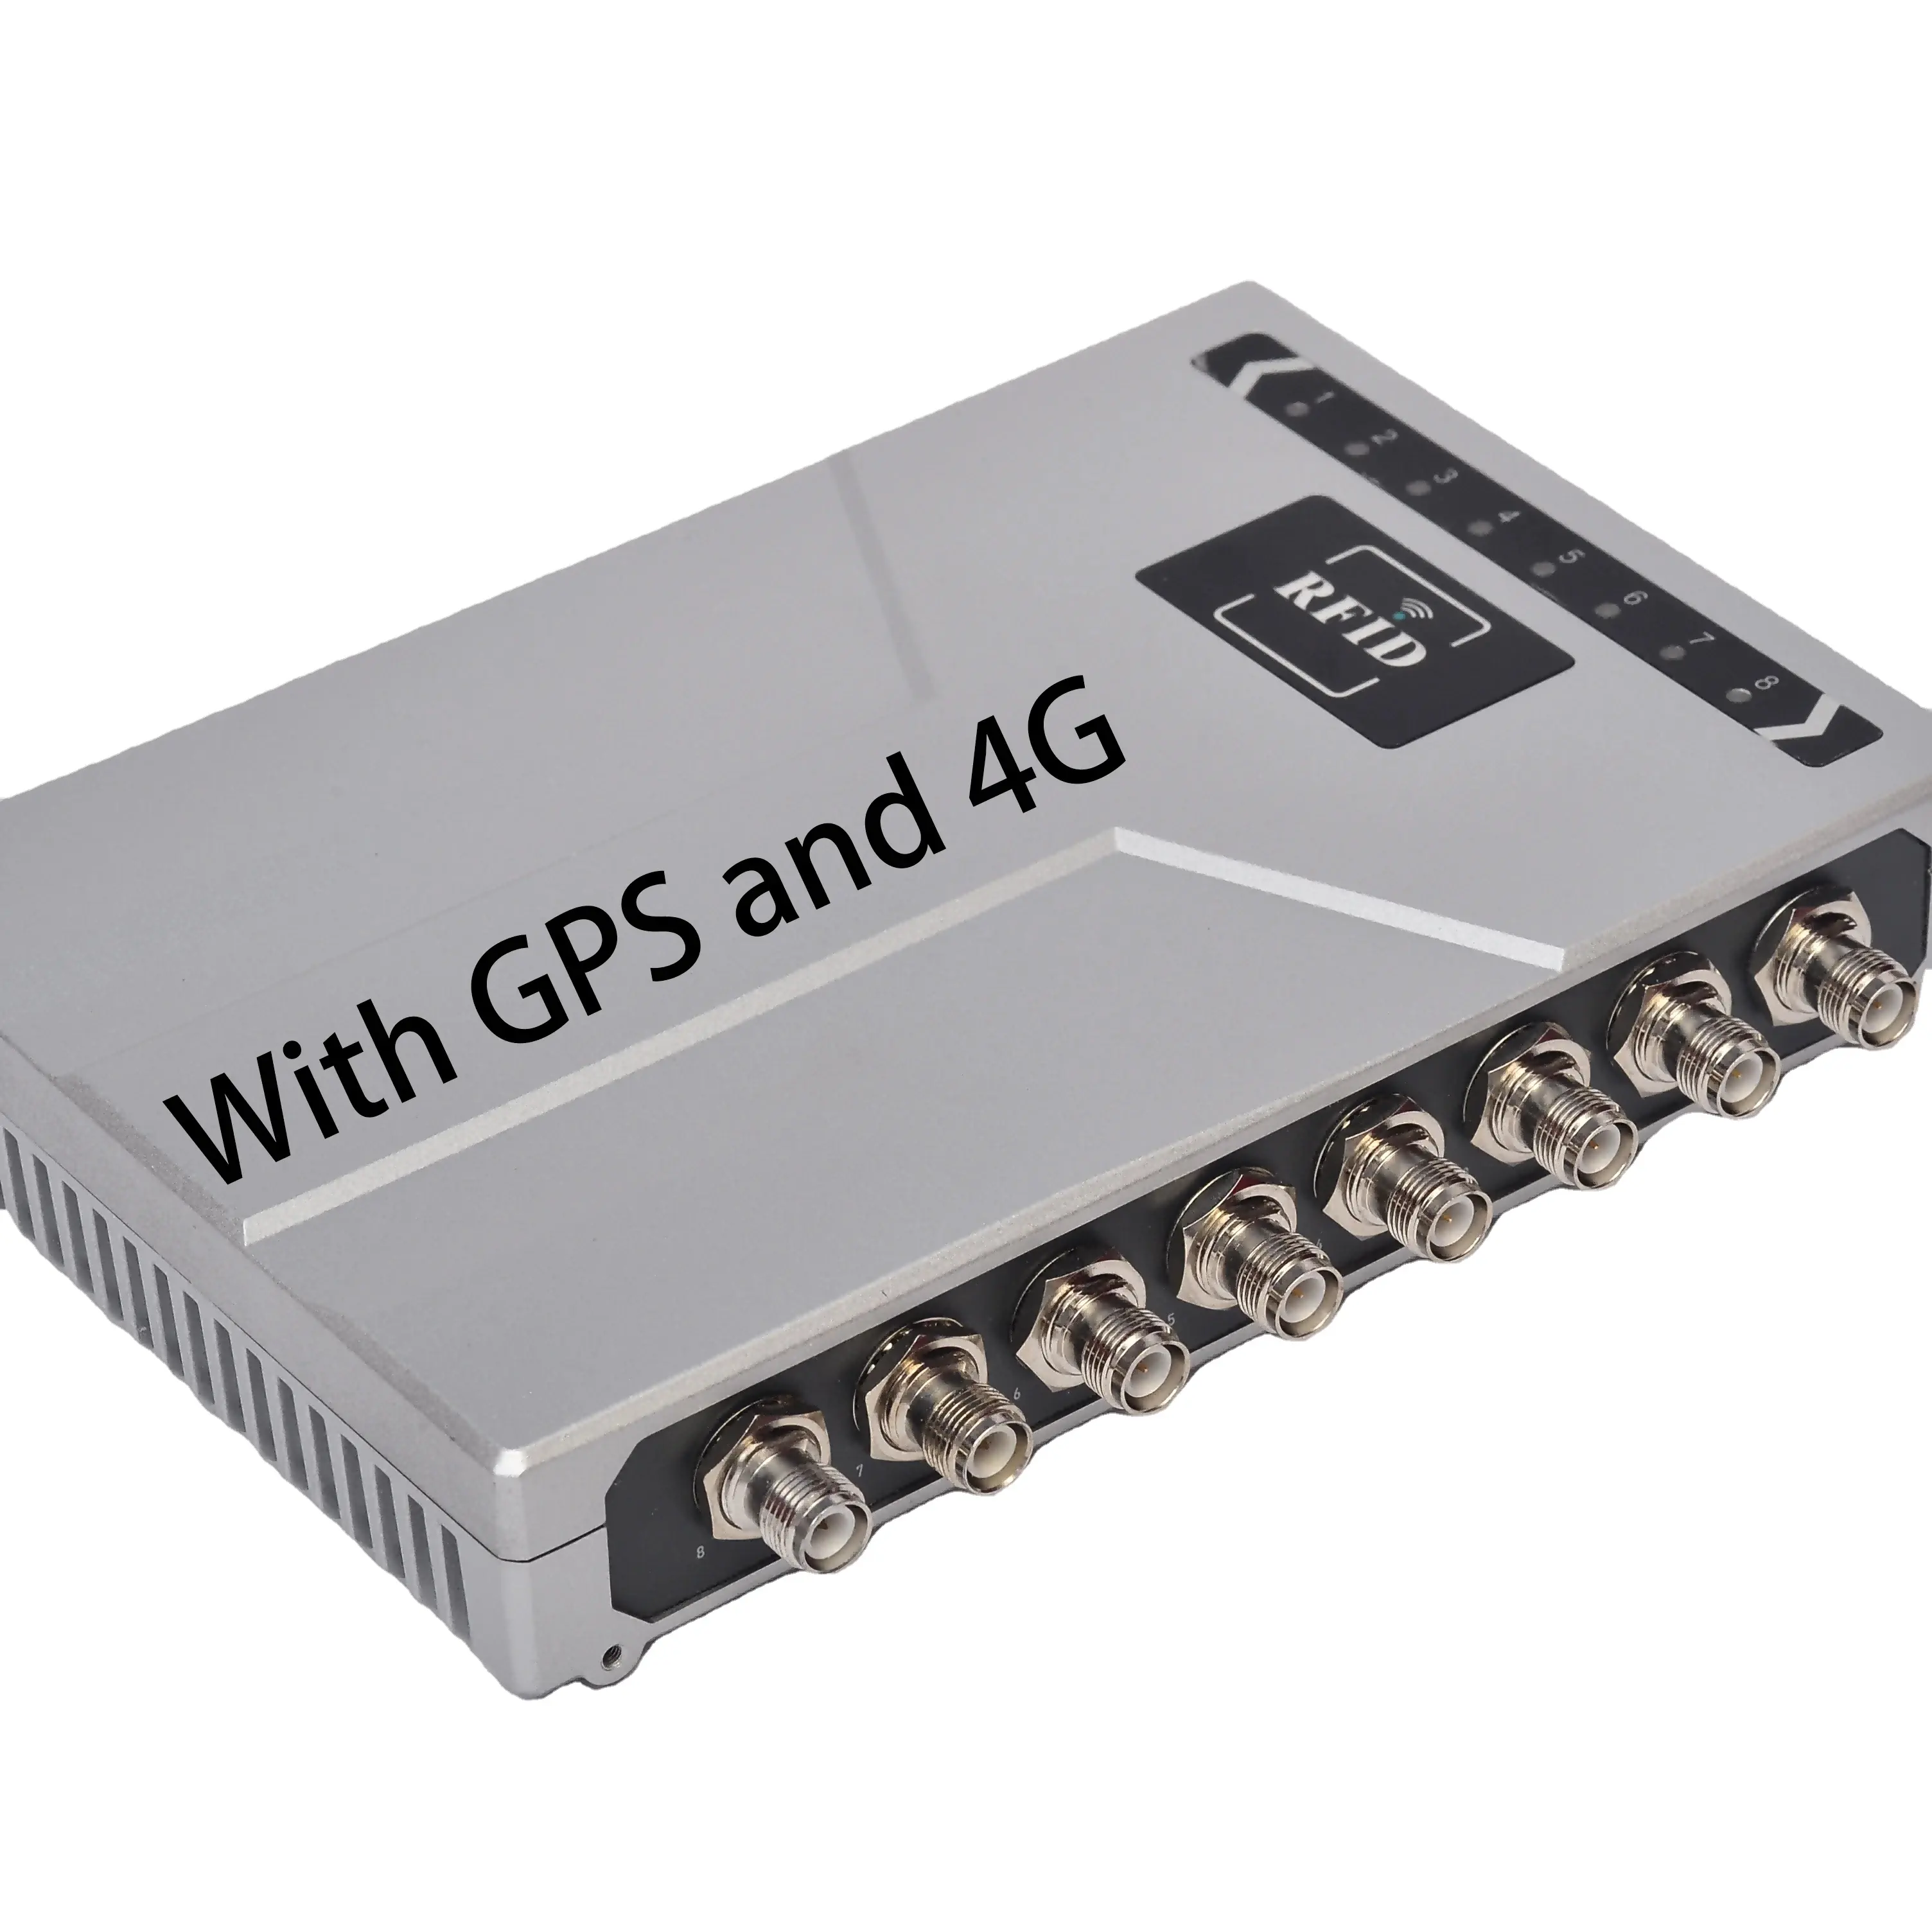 Pembaca RFID UHF tetap 4G, chip performa tinggi 8 port dengan GPS dan pembaca inventaris gudang